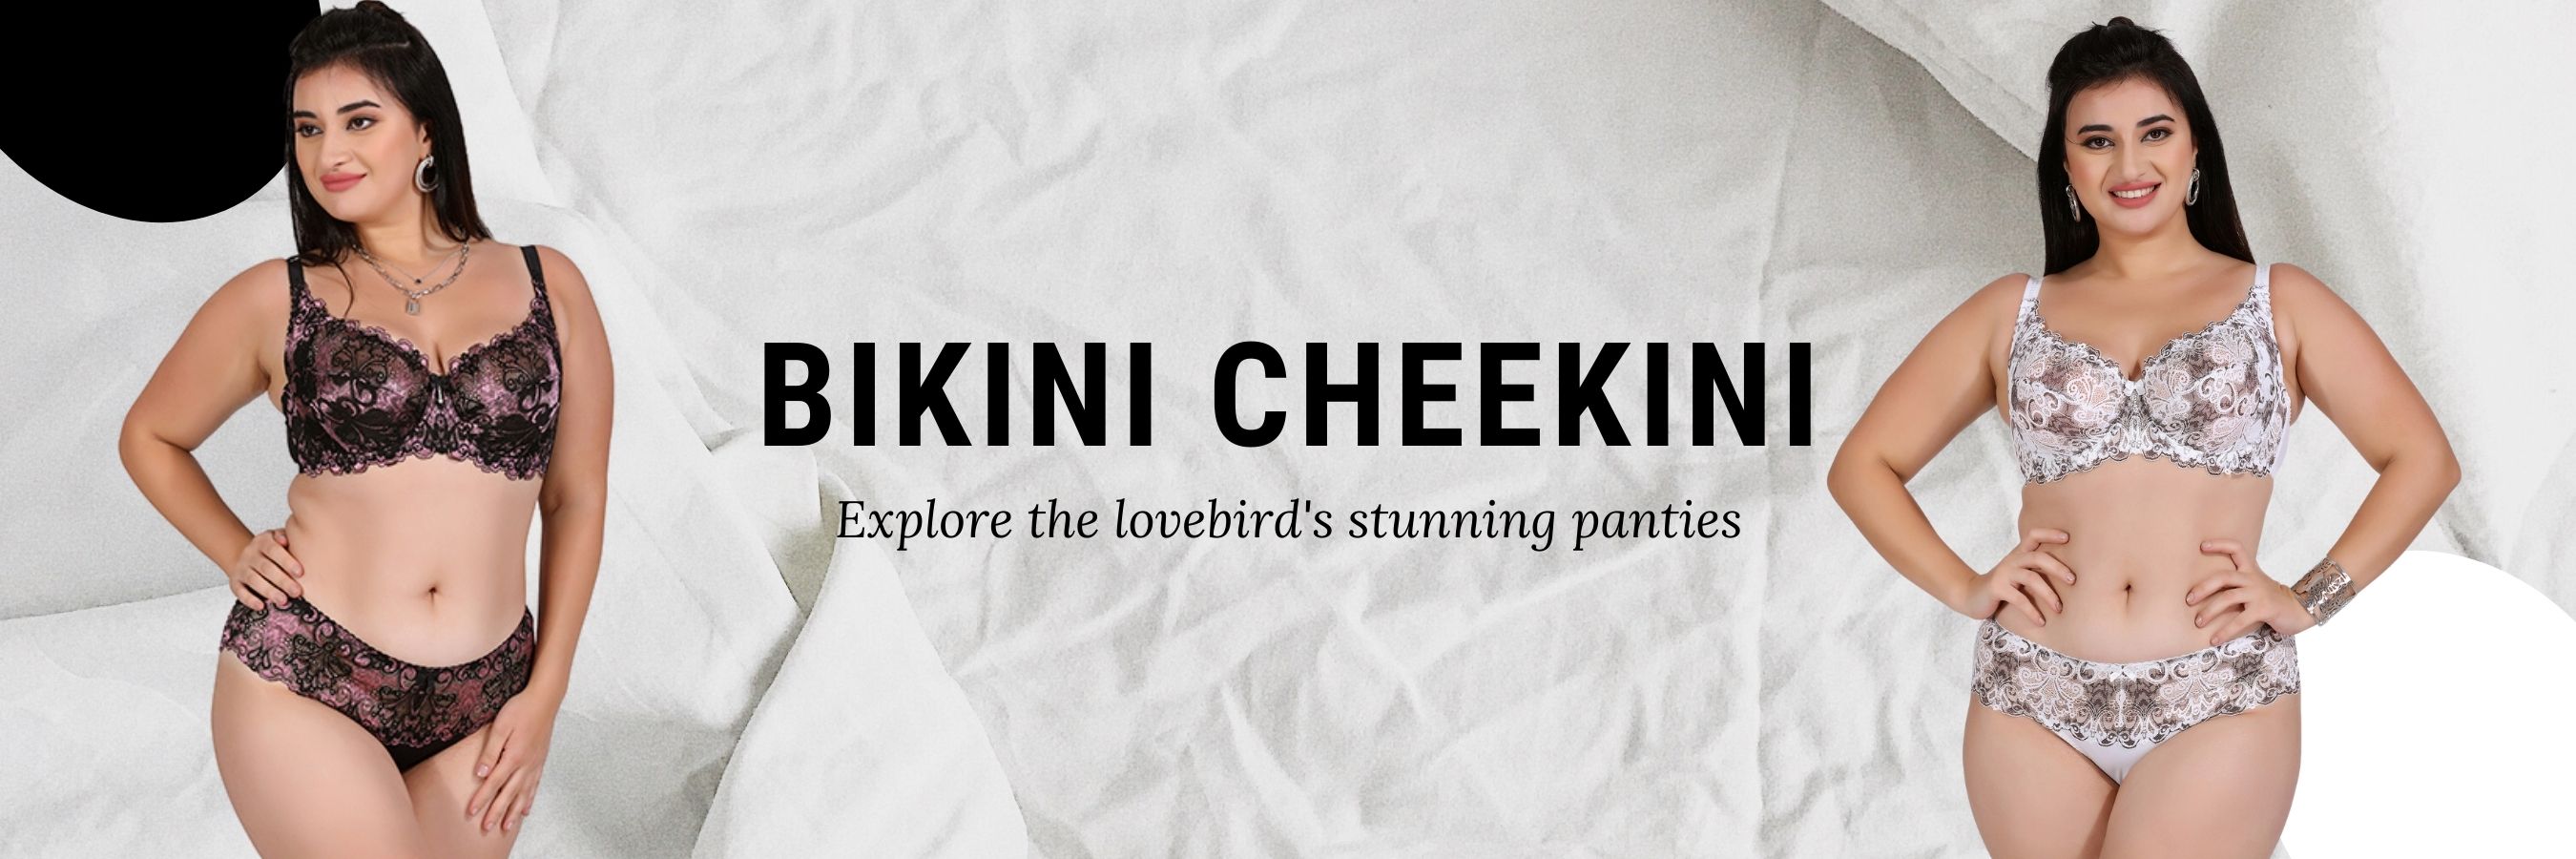 Bikini - Buy Cheeky Bikinis fo banner lovebird